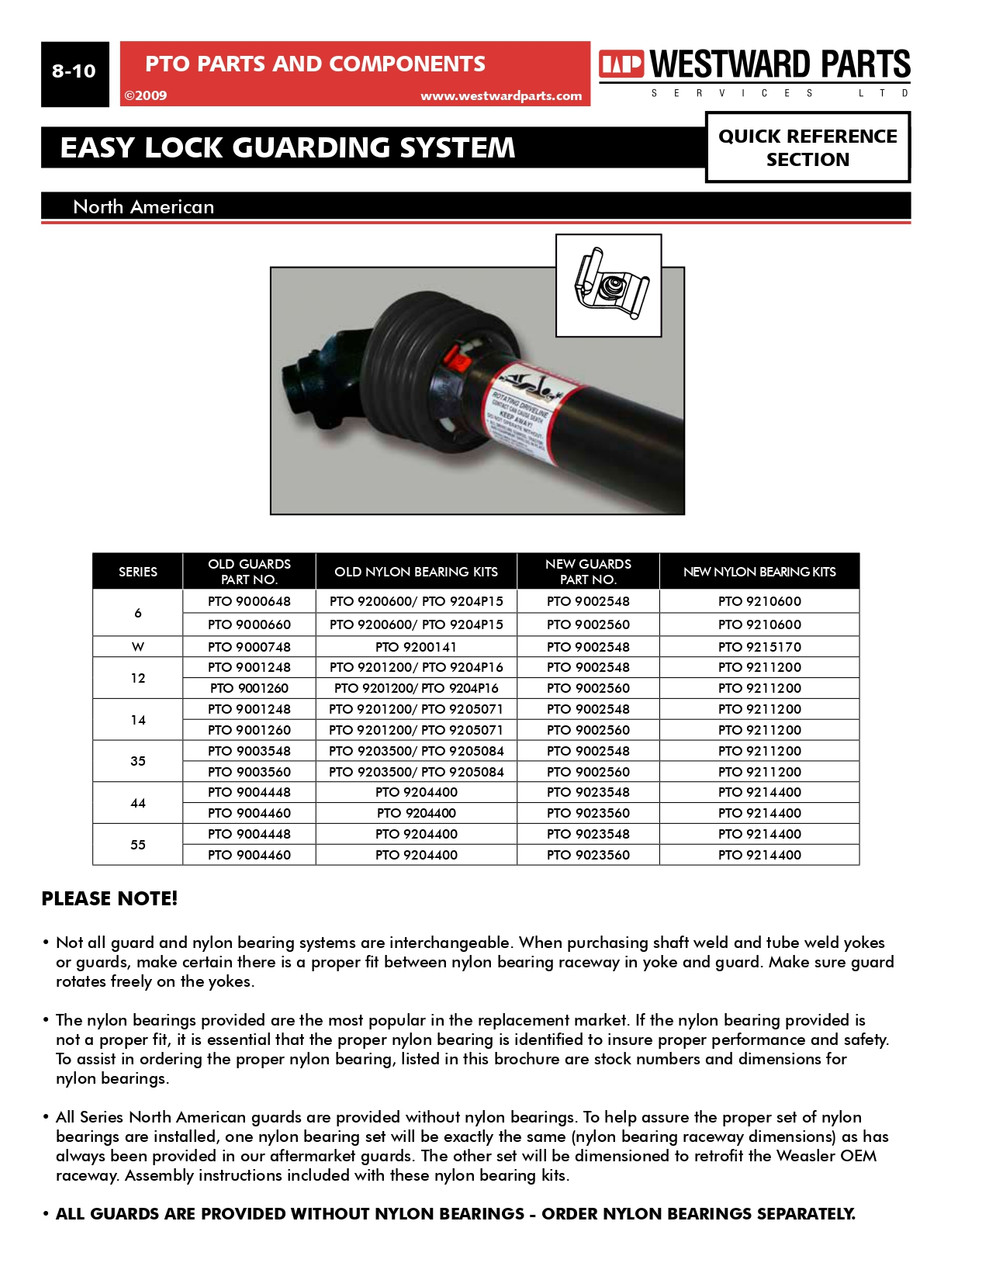 4 Pc. Easy Lock Guard Repair Kit - North American / European Multiseries  PTO13005000